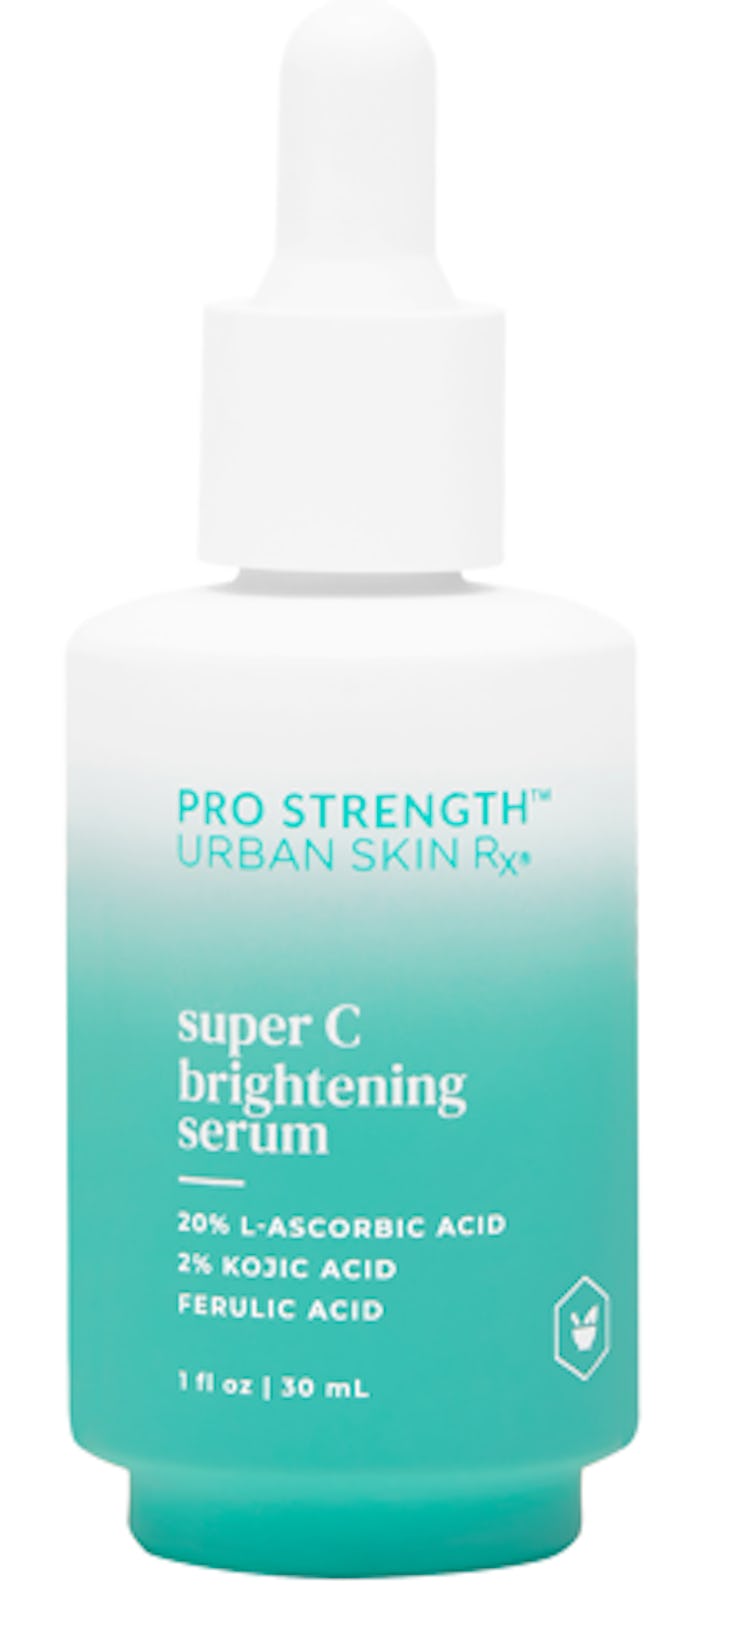 Super C Brightening Serum